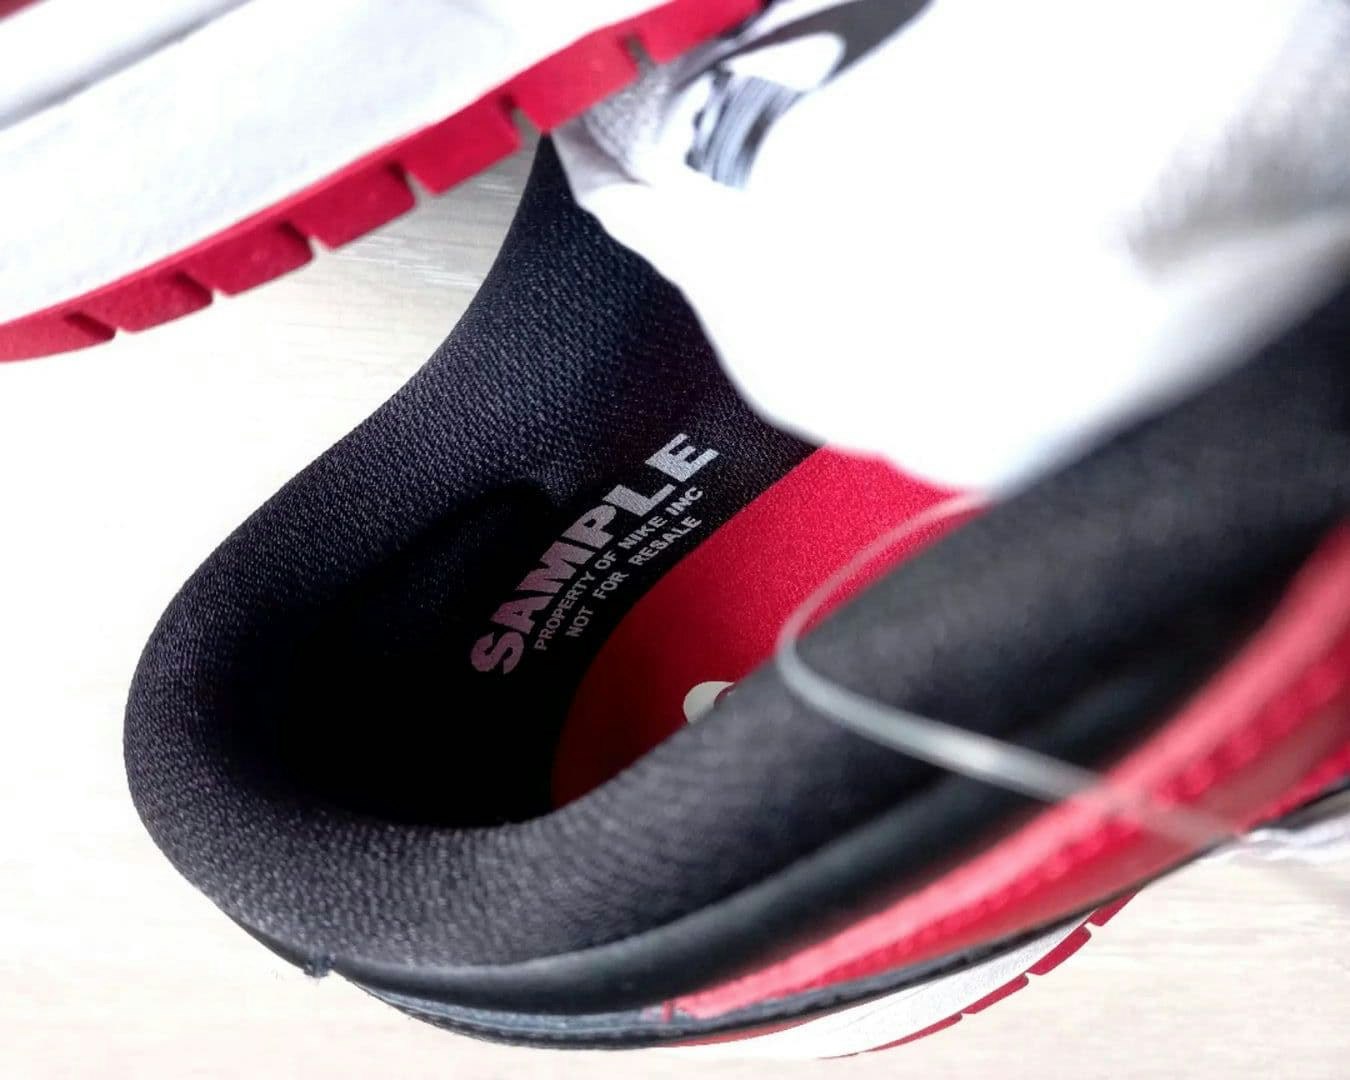 Nike SB Dunk Low "Black Toe"